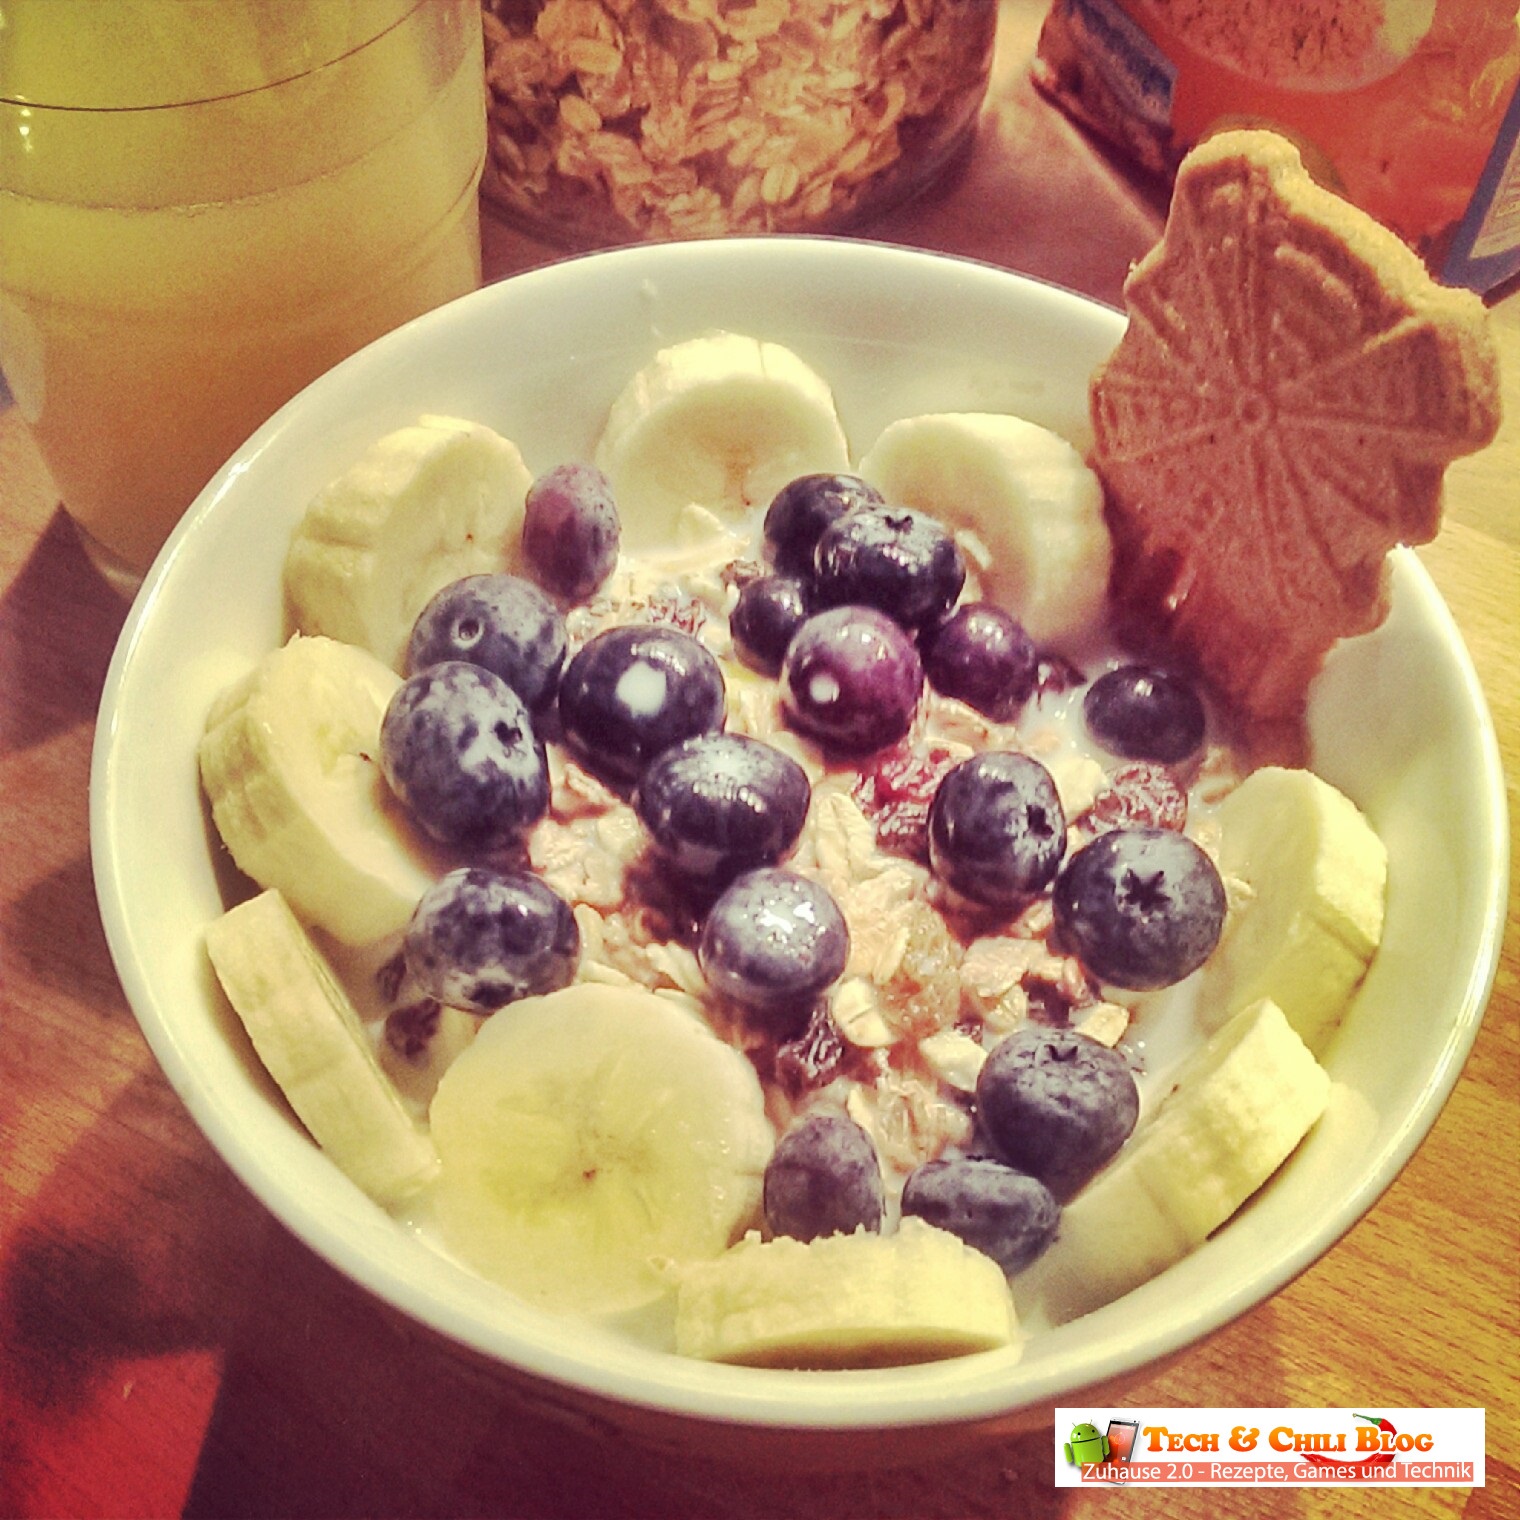 Rezept: Frühstück mit Blaubeeren, Banane und Müsli - TechNChili Blog